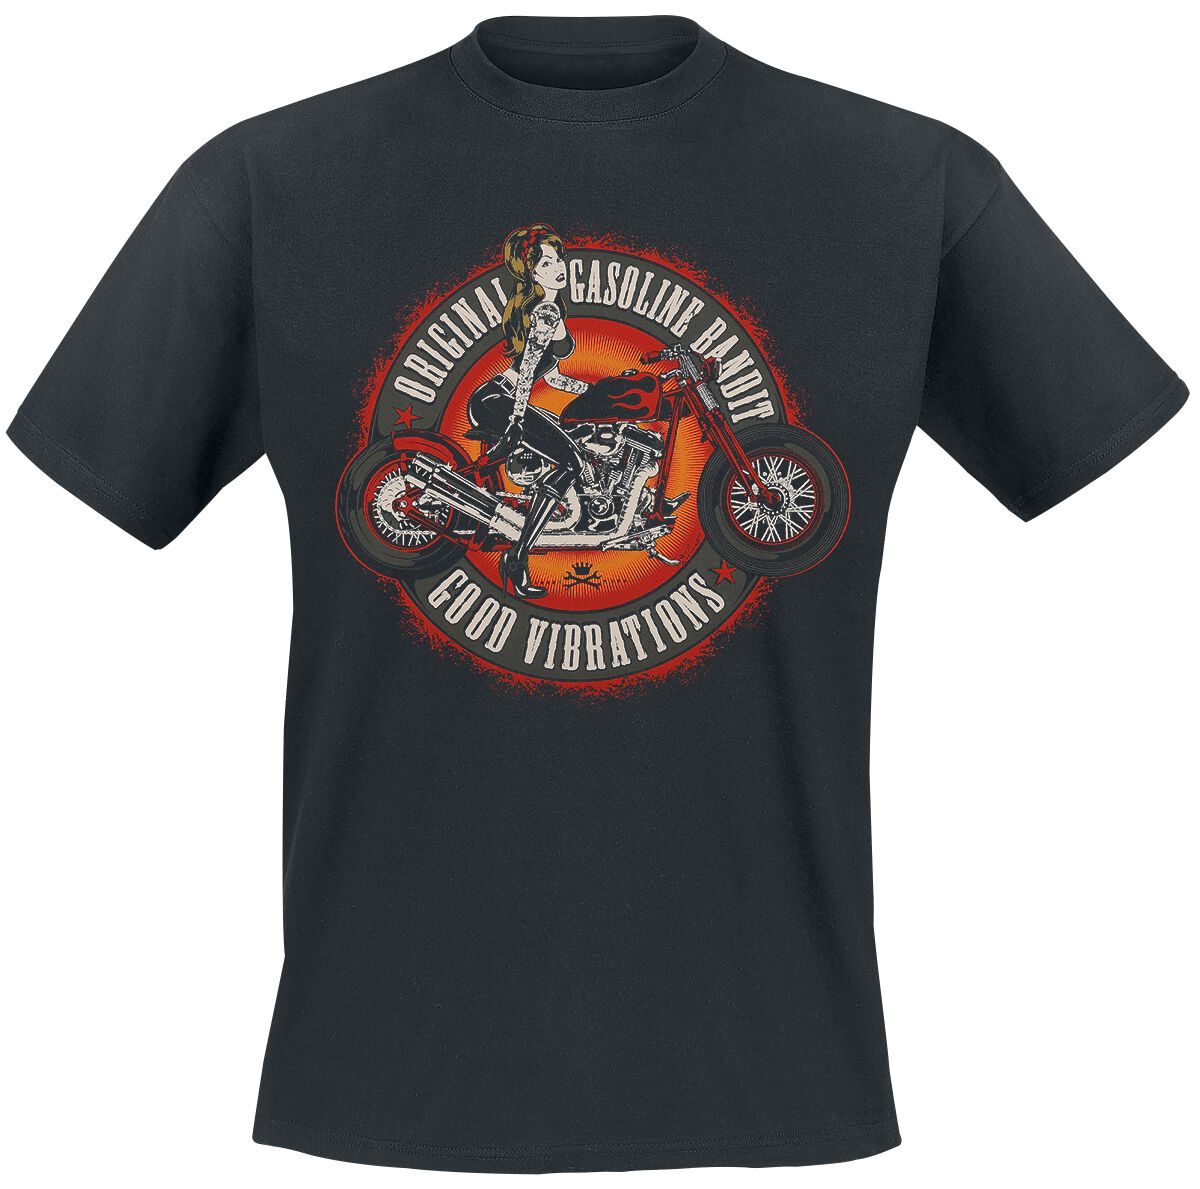 Gasoline Bandit Good Vibrations T-Shirt black